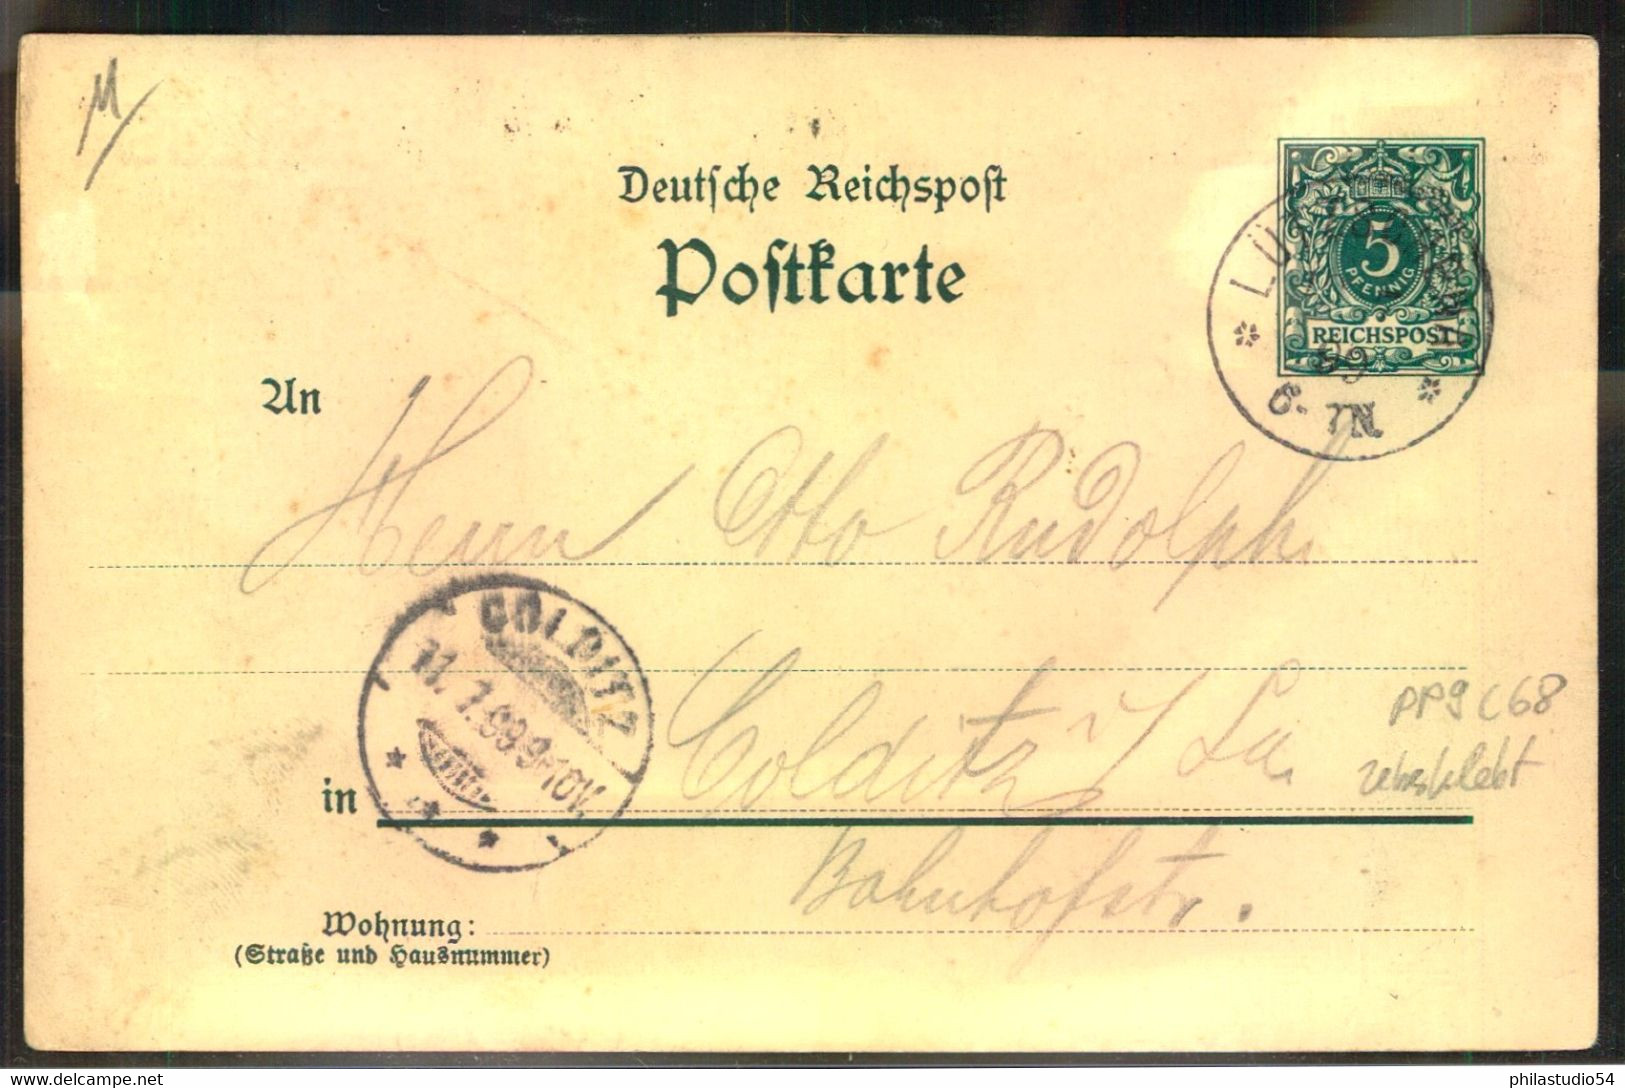 1899, Privatganzsache  (PP 9) "Gruss Vom Leipziger Schützenfesrt, Gelaufen - Other & Unclassified